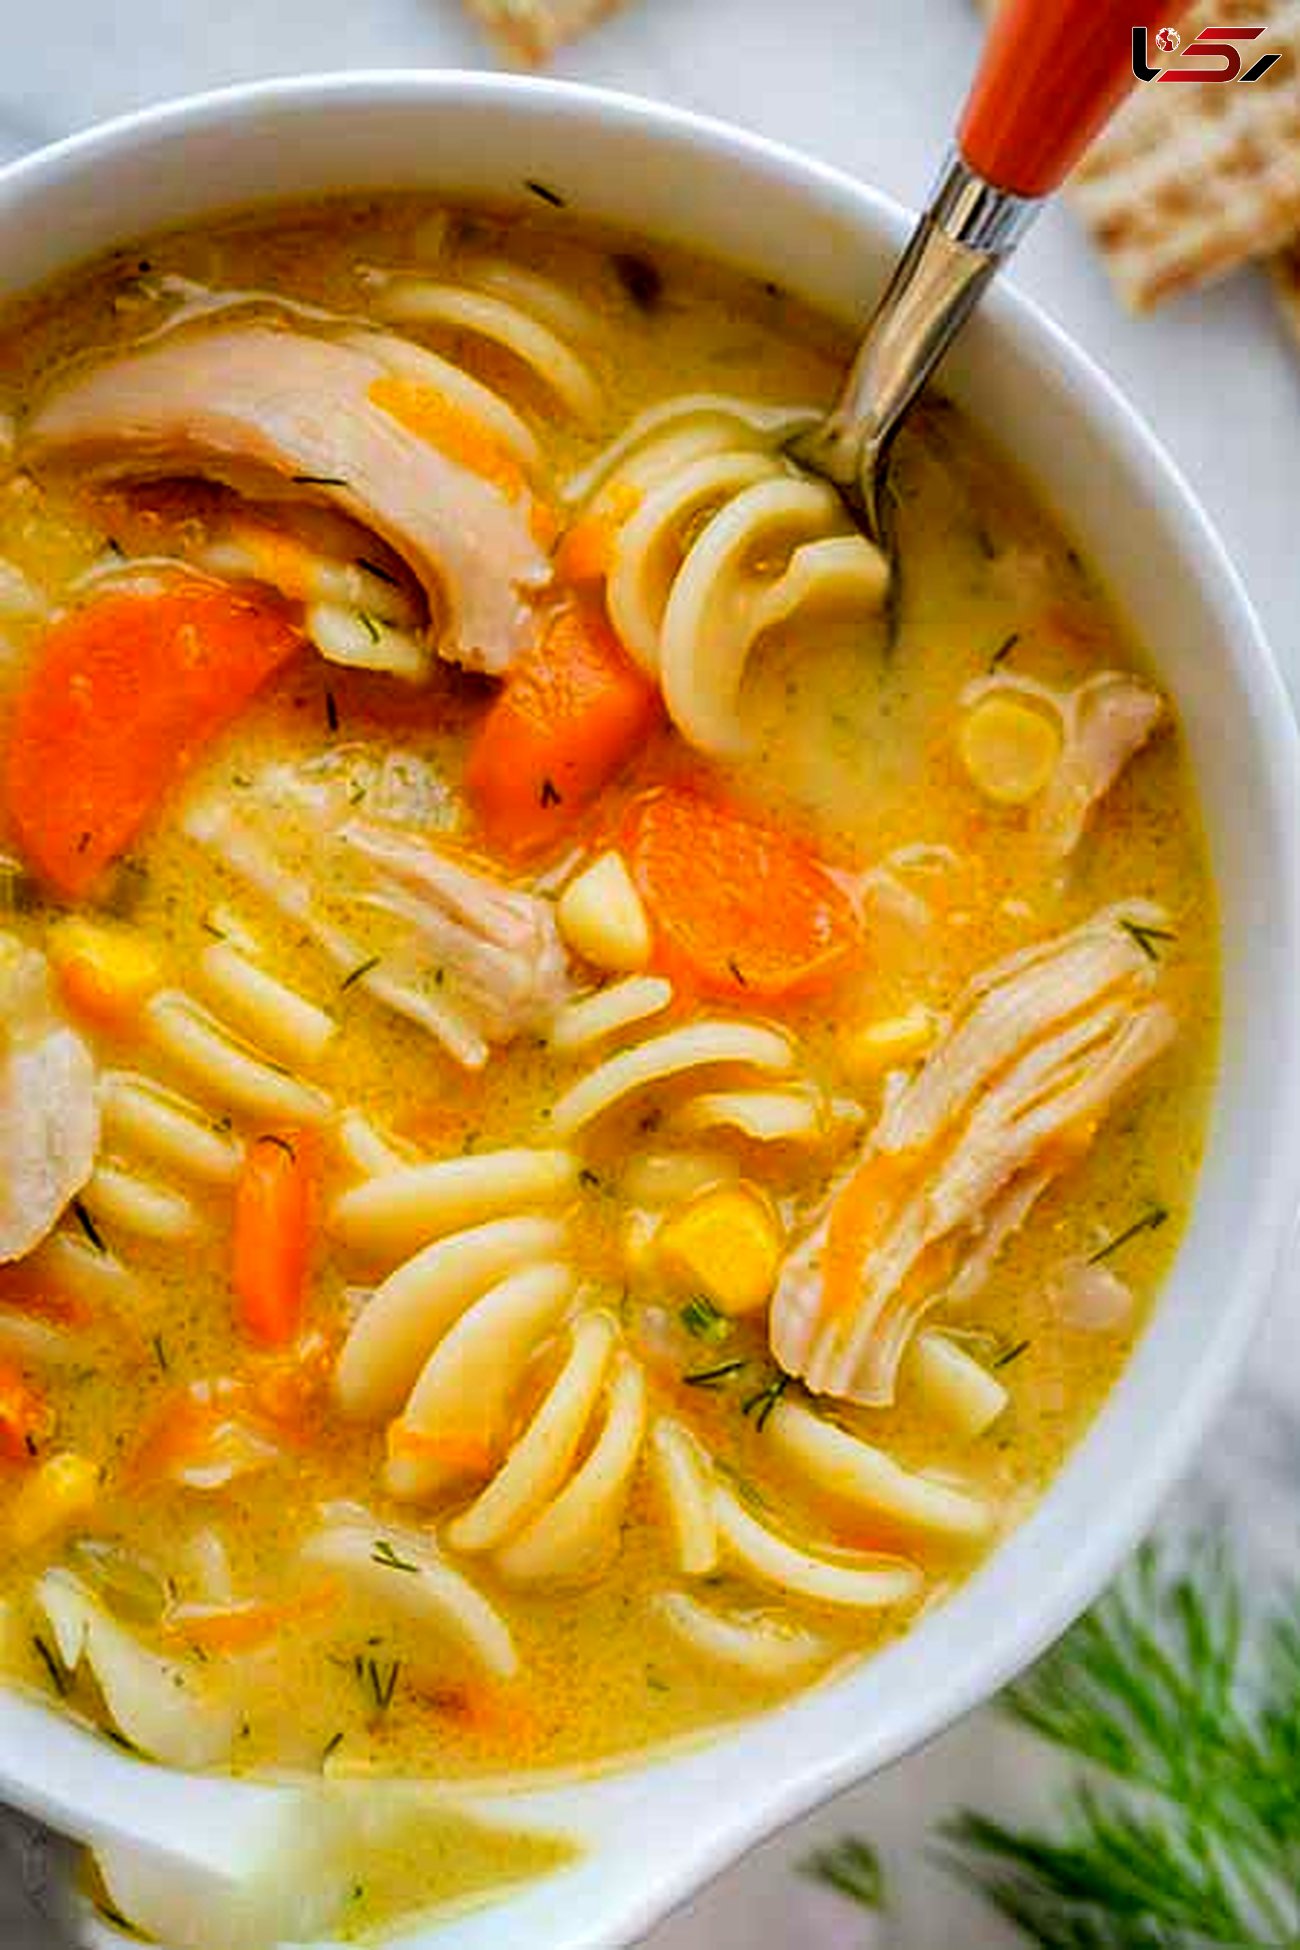 سوپ جوجه و نودل خامه ای یک پیش غذای خوشمزه + دستور تهیه